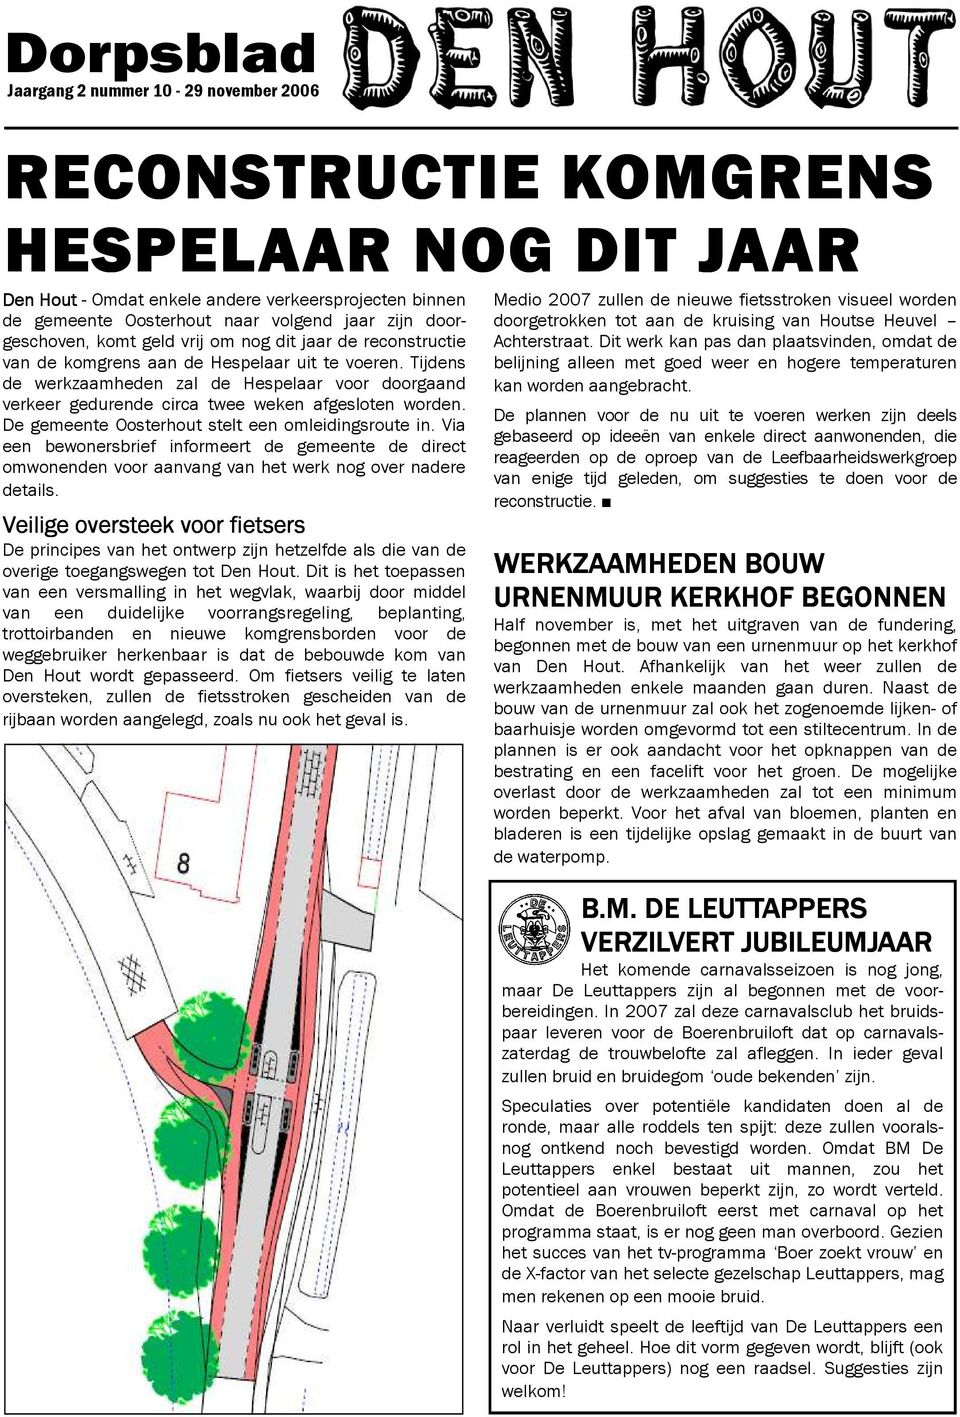 Tijdens de werkzaamheden zal de Hespelaar voor doorgaand verkeer gedurende circa twee weken afgesloten worden. De gemeente Oosterhout stelt een omleidingsroute in.